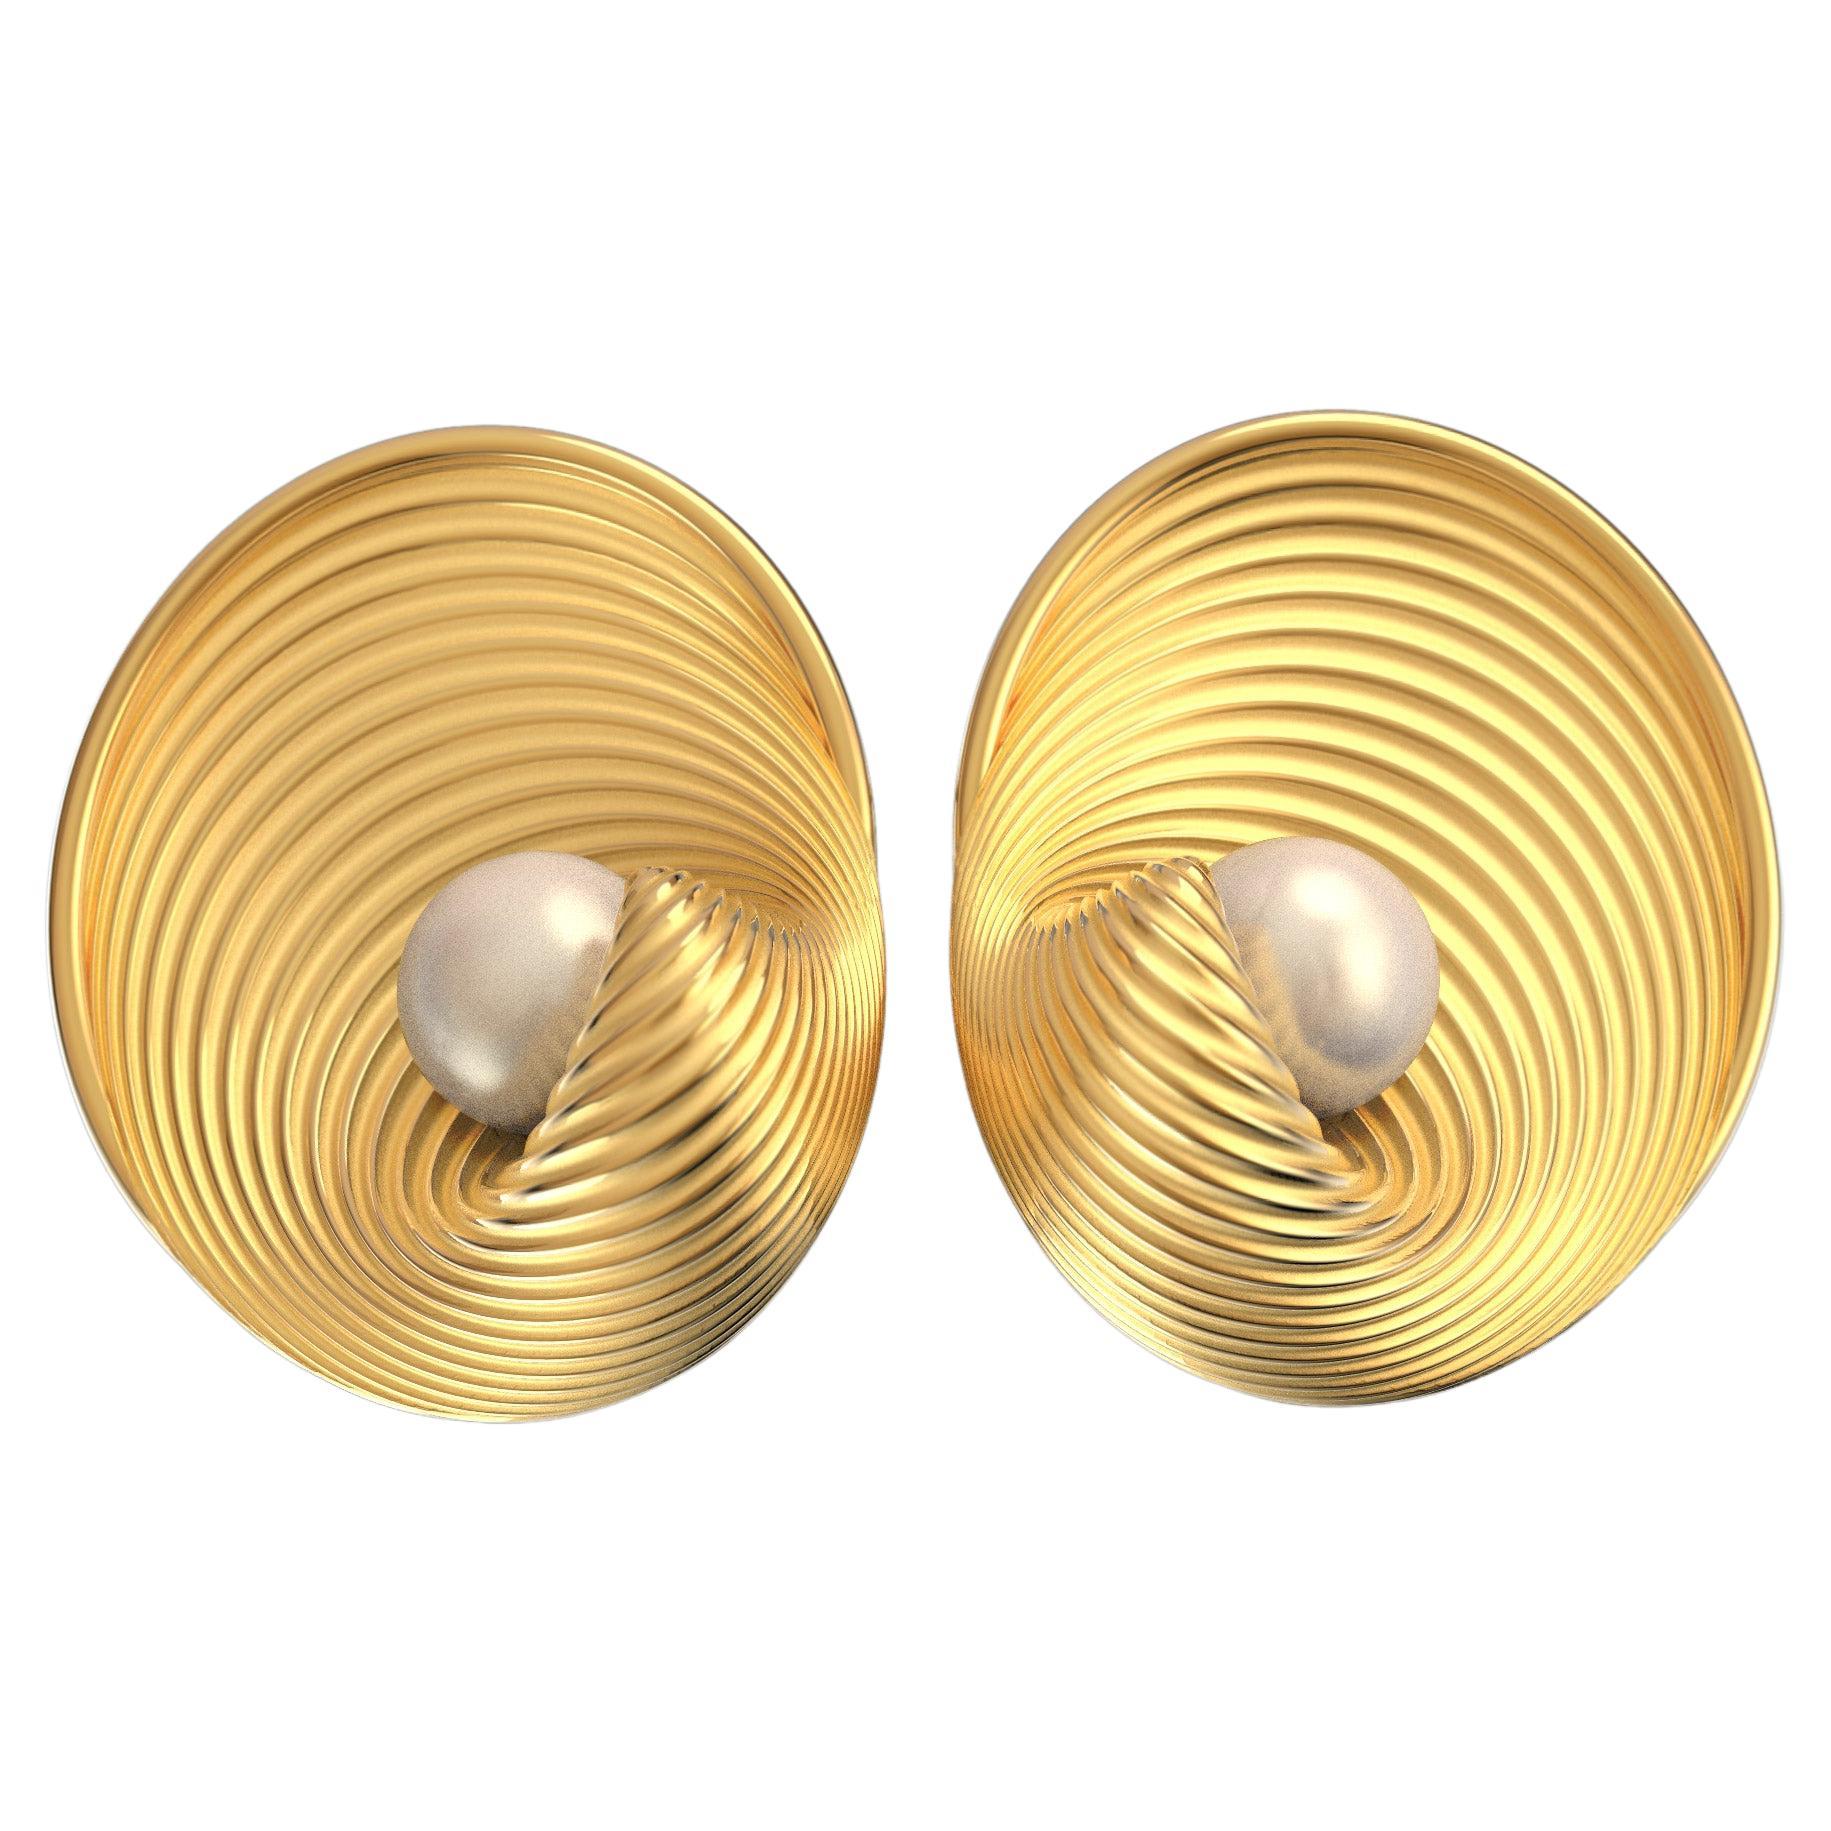 Akoya-Perlenohrringe aus massivem 18-karätigem Gold, hergestellt in Italien, weiße Perlenohrringe. Italienischer Schmuck, moderne Ohrringe aus Gold, 25 mm lange Ohrringe mit natürlichen Akoya-Meeresperlen, gefertigt aus poliertem und rohem massivem